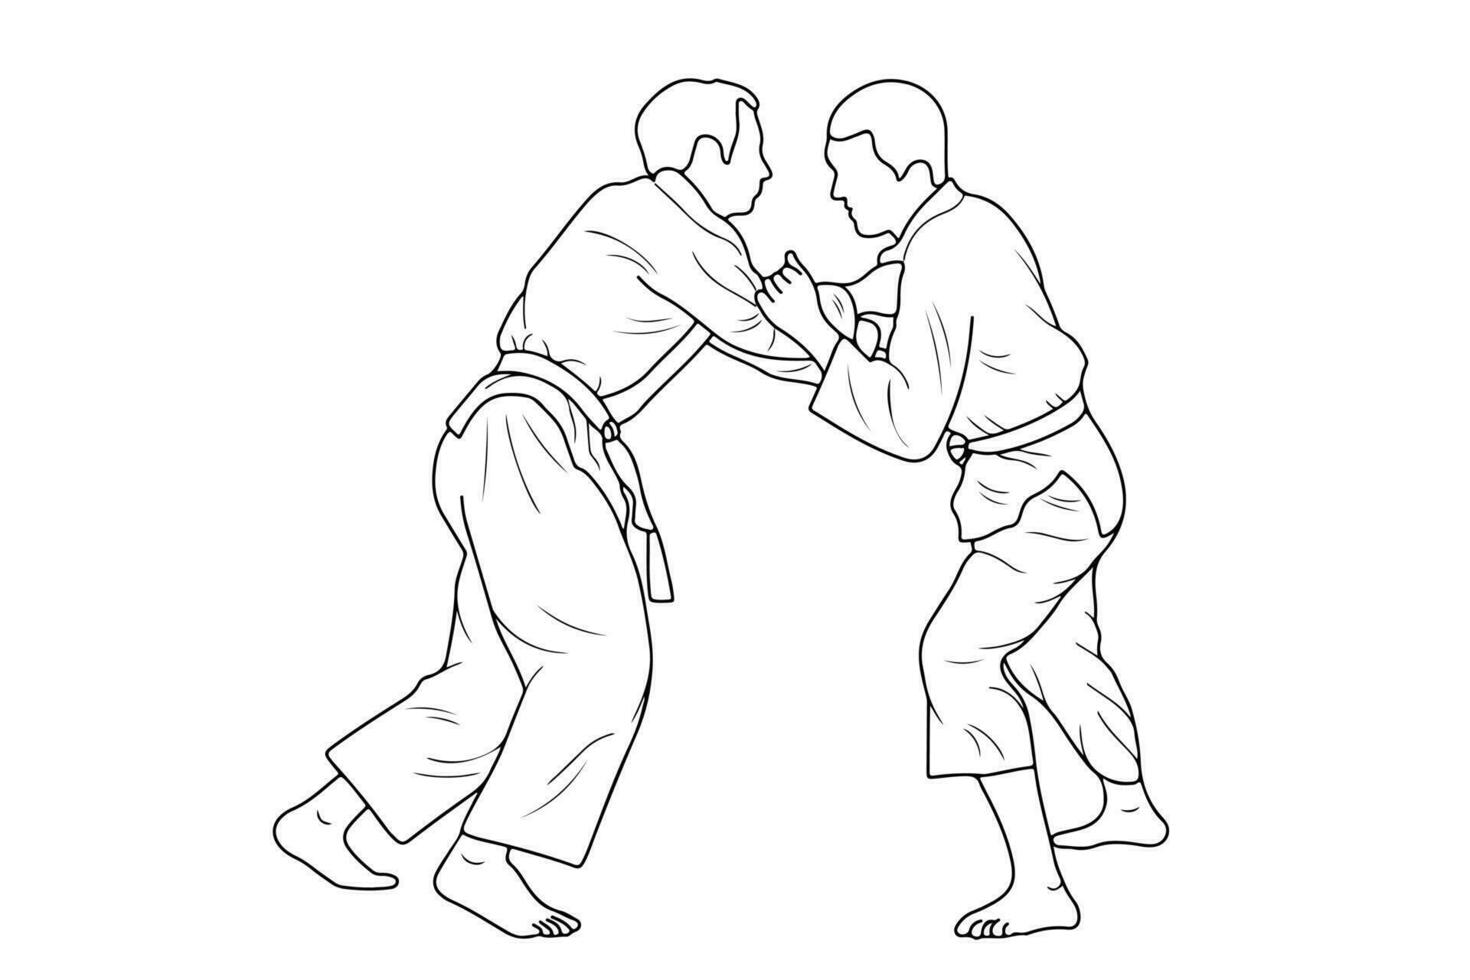 ligne dessin de deux Jeune sportif judoka combattant. judaïsme, judoka, athlète, duel, lutte, judo vecteur